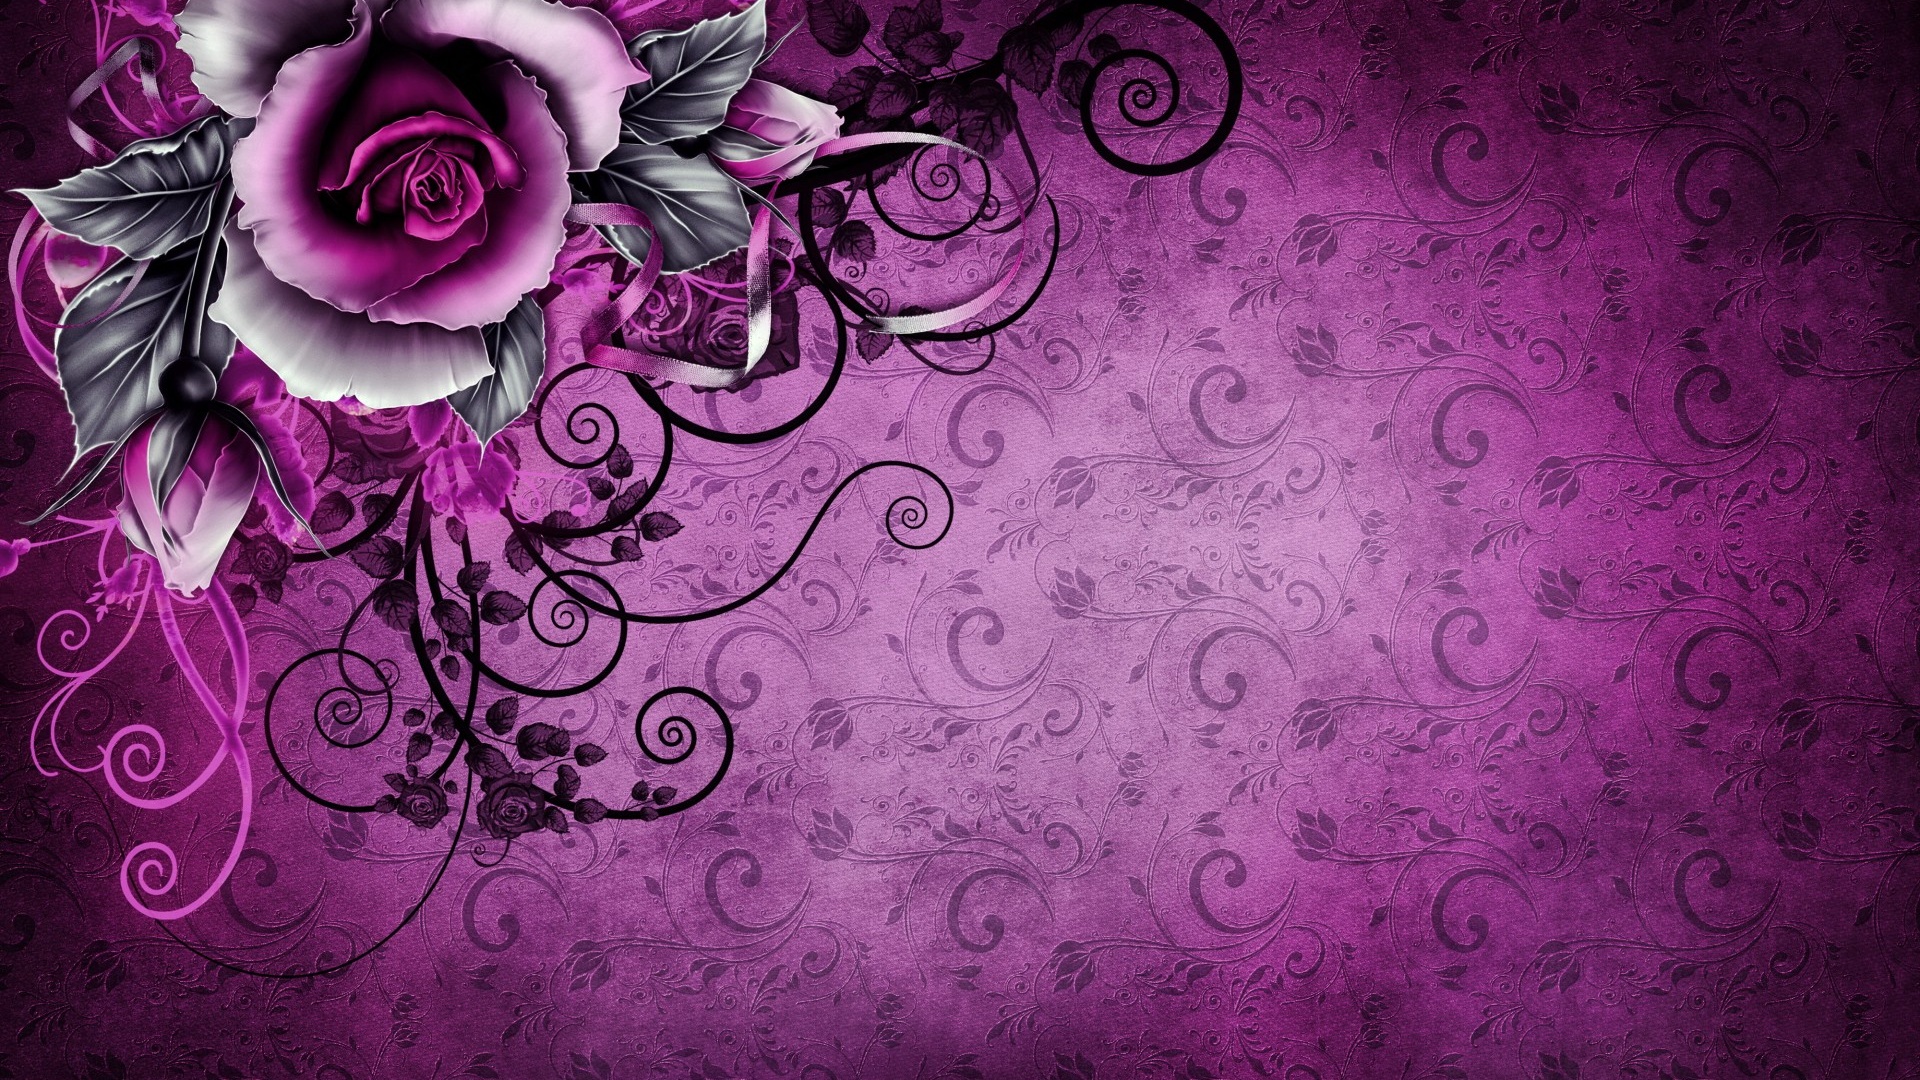 Hoa hồng tím cổ điển: Hãy khám phá hoa hồng tím cổ điển trong bức hình này! Được yêu thích từ lâu đời, những đốm tím trên cánh hoa làm nổi bật sắc đỏ tươi sáng, tạo nên một thiên graceful và đầy cảm hứng. Một bức ảnh hoa hồng tím cổ điển sẽ làm cho không gian của bạn trở nên đẹp hơn và ấn tượng hơn.